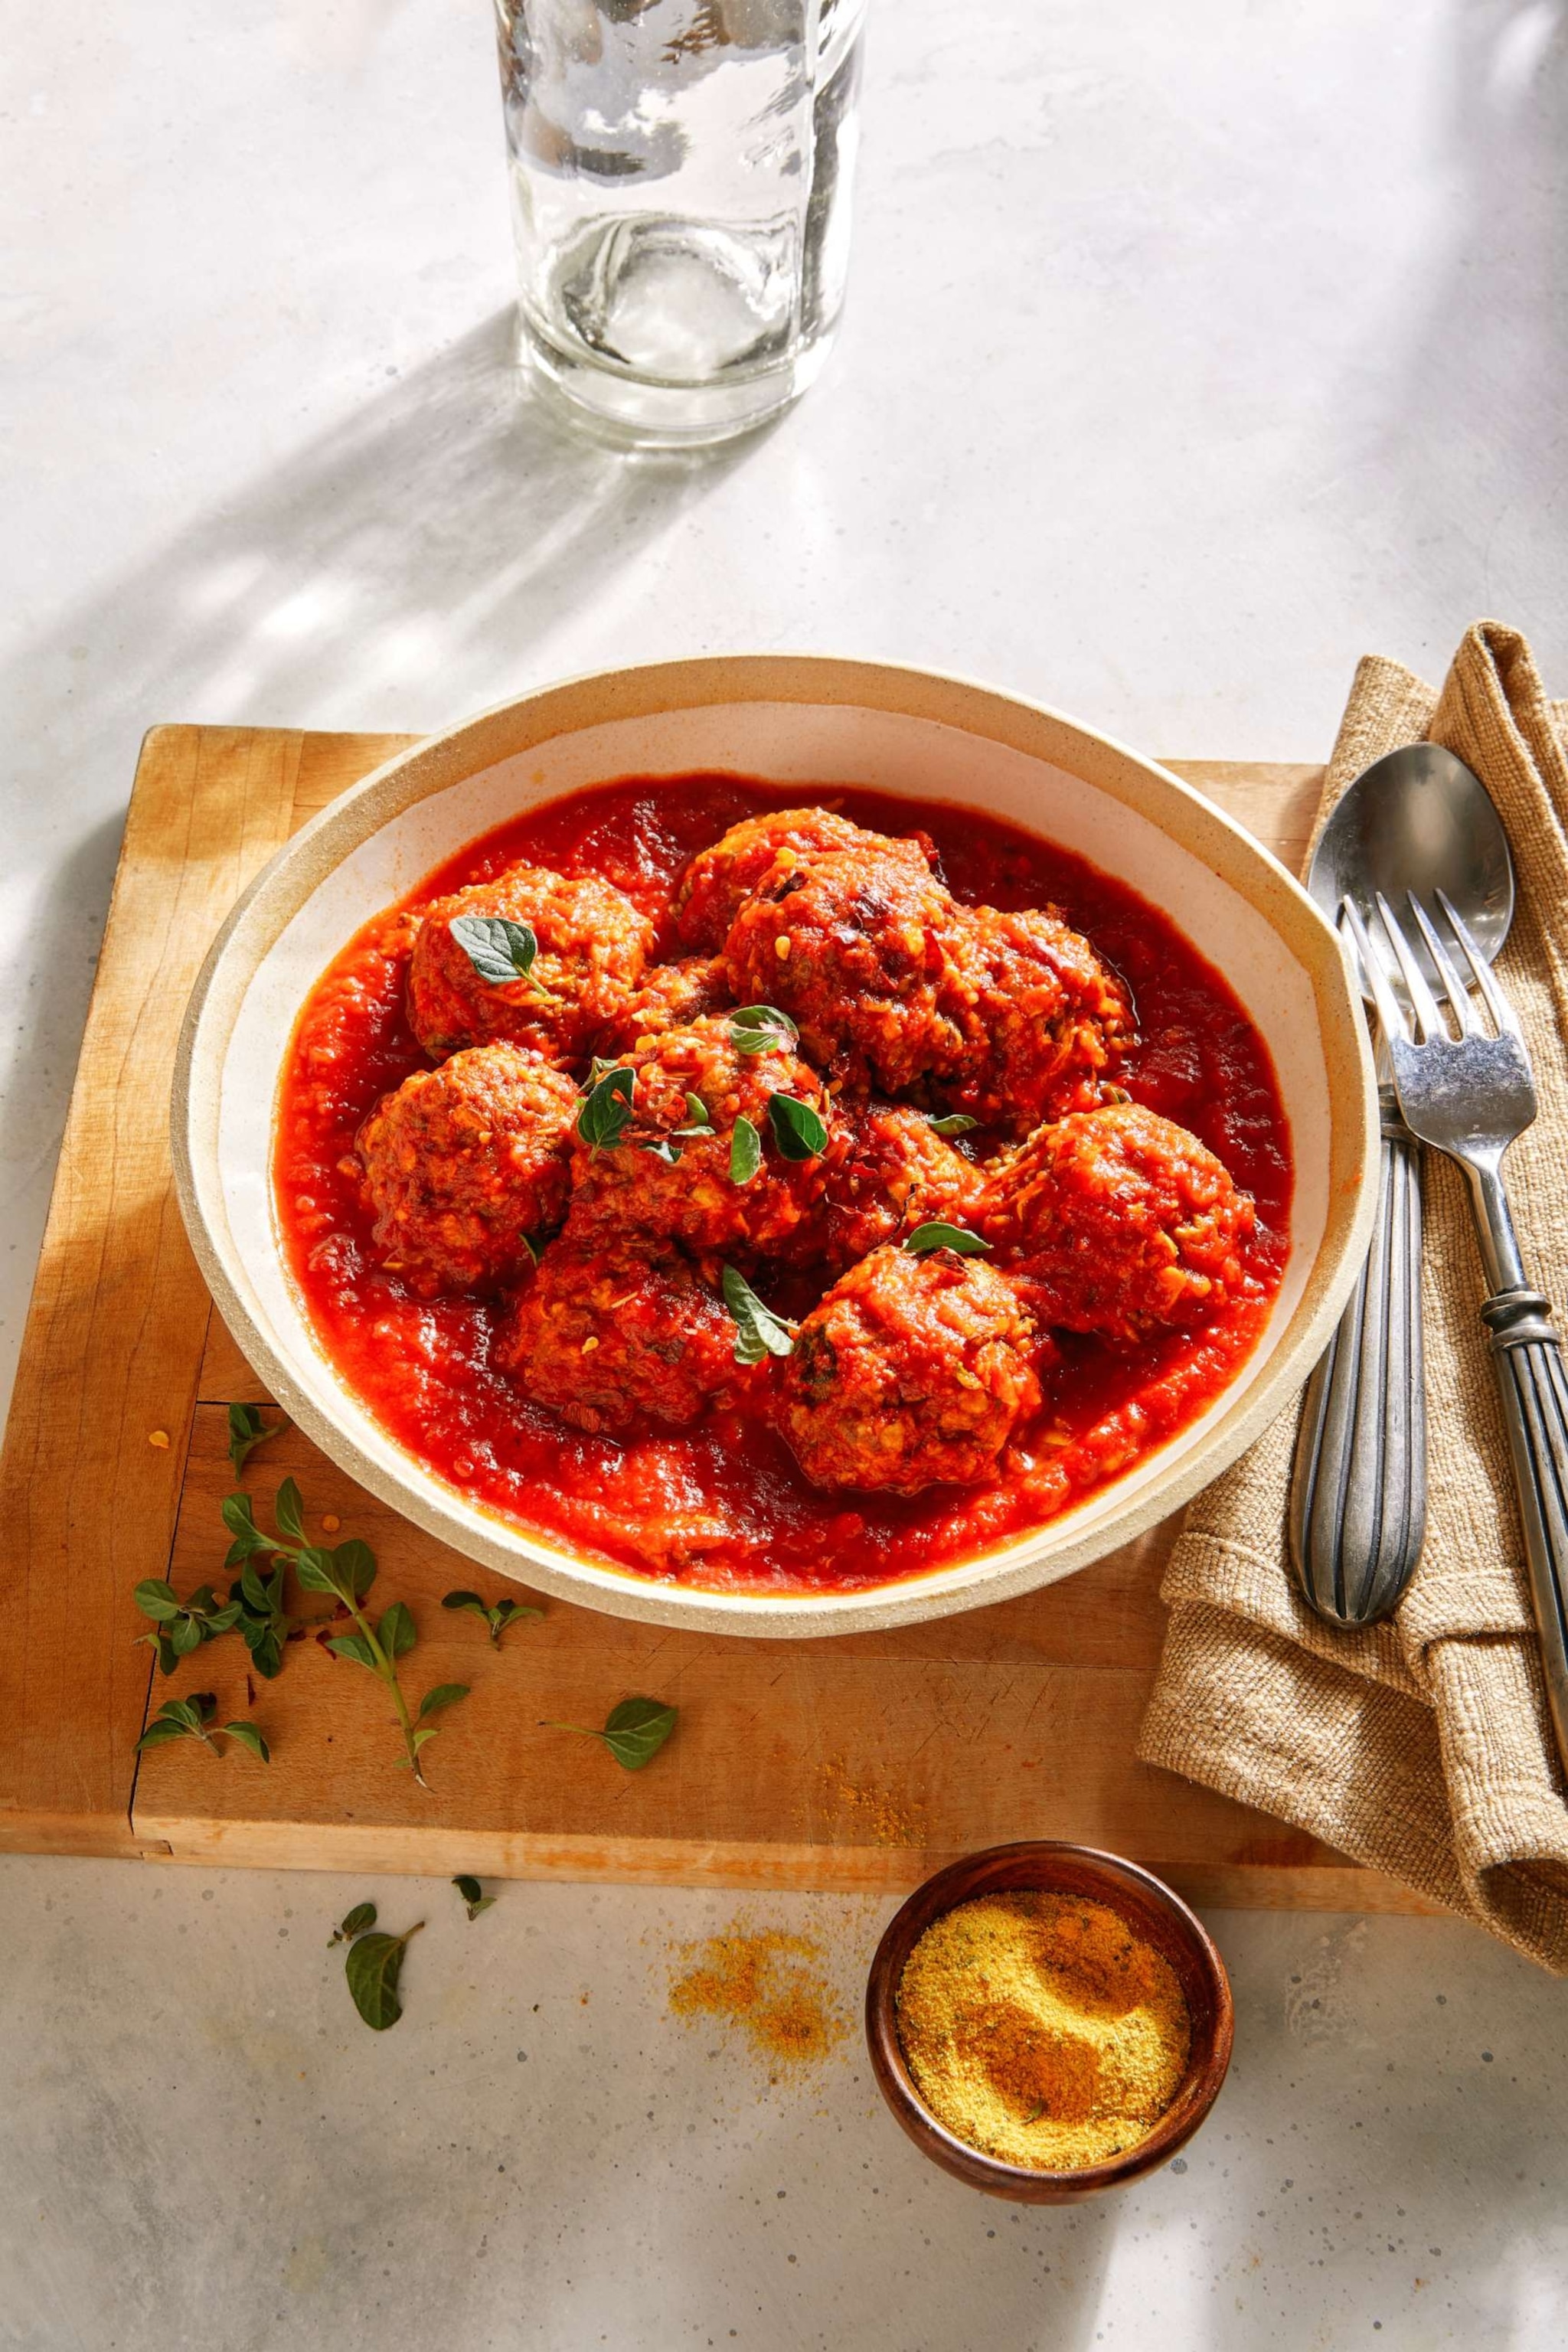 PHOTO: Lentil meatballs in tomato sauce from Rachel Beller's "Spice."